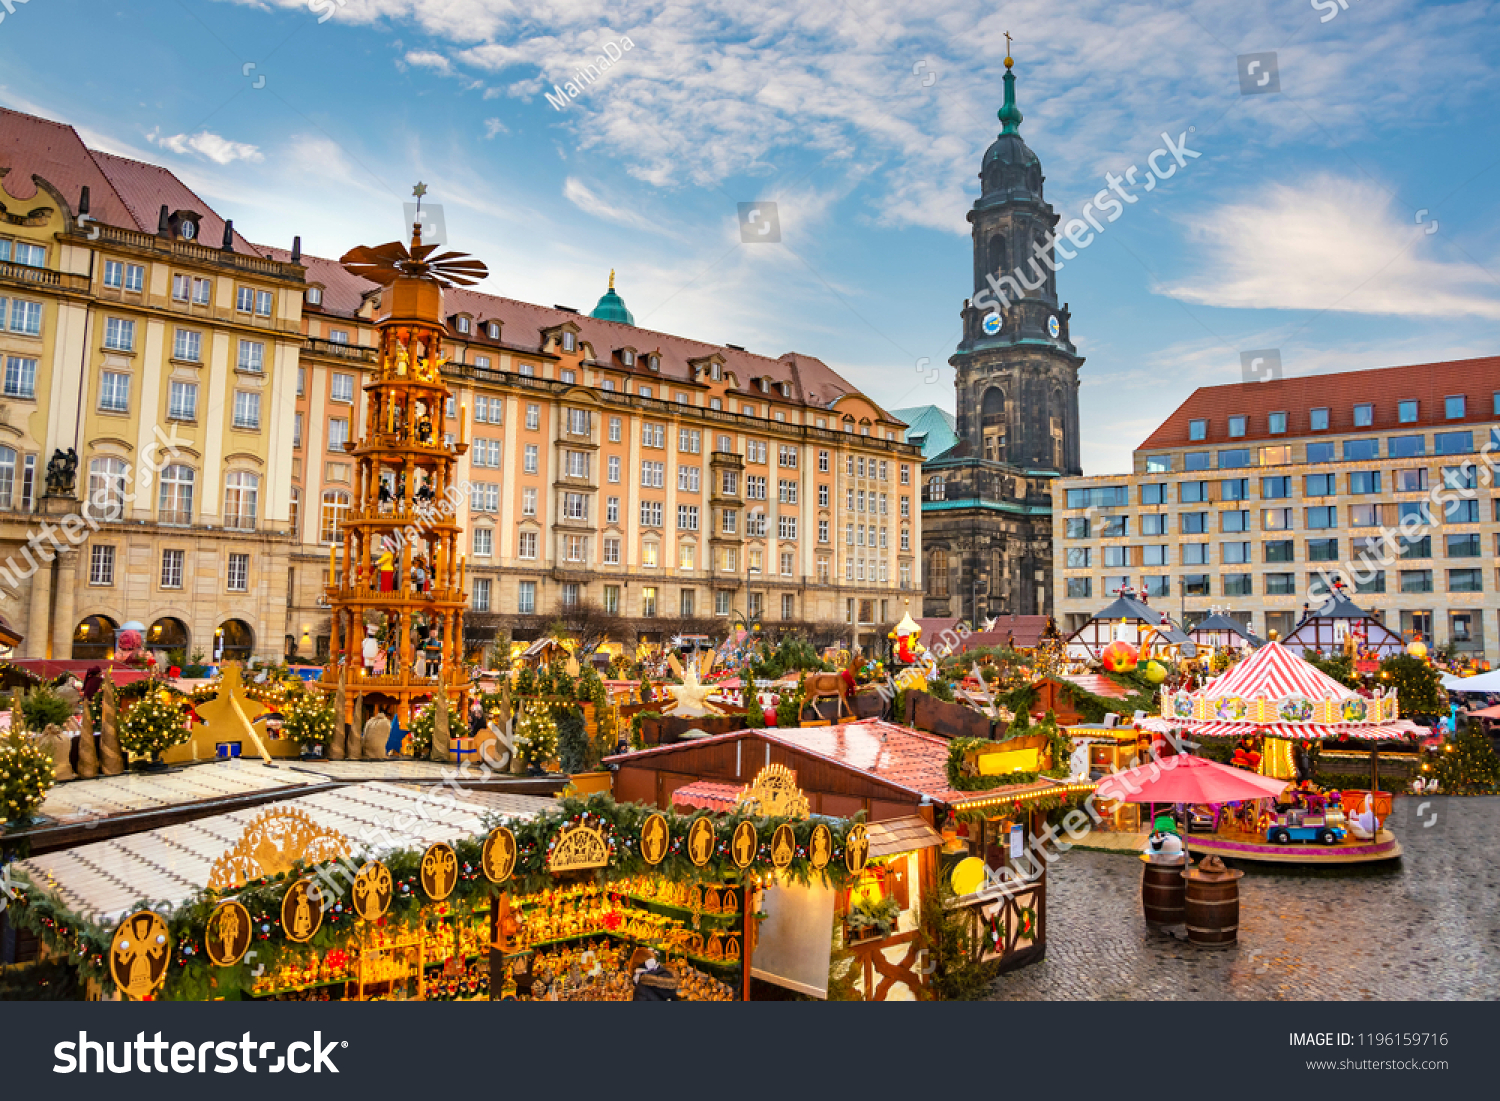 Christmas market Striezelmarkt in Dresden, Germany.  #1196159716